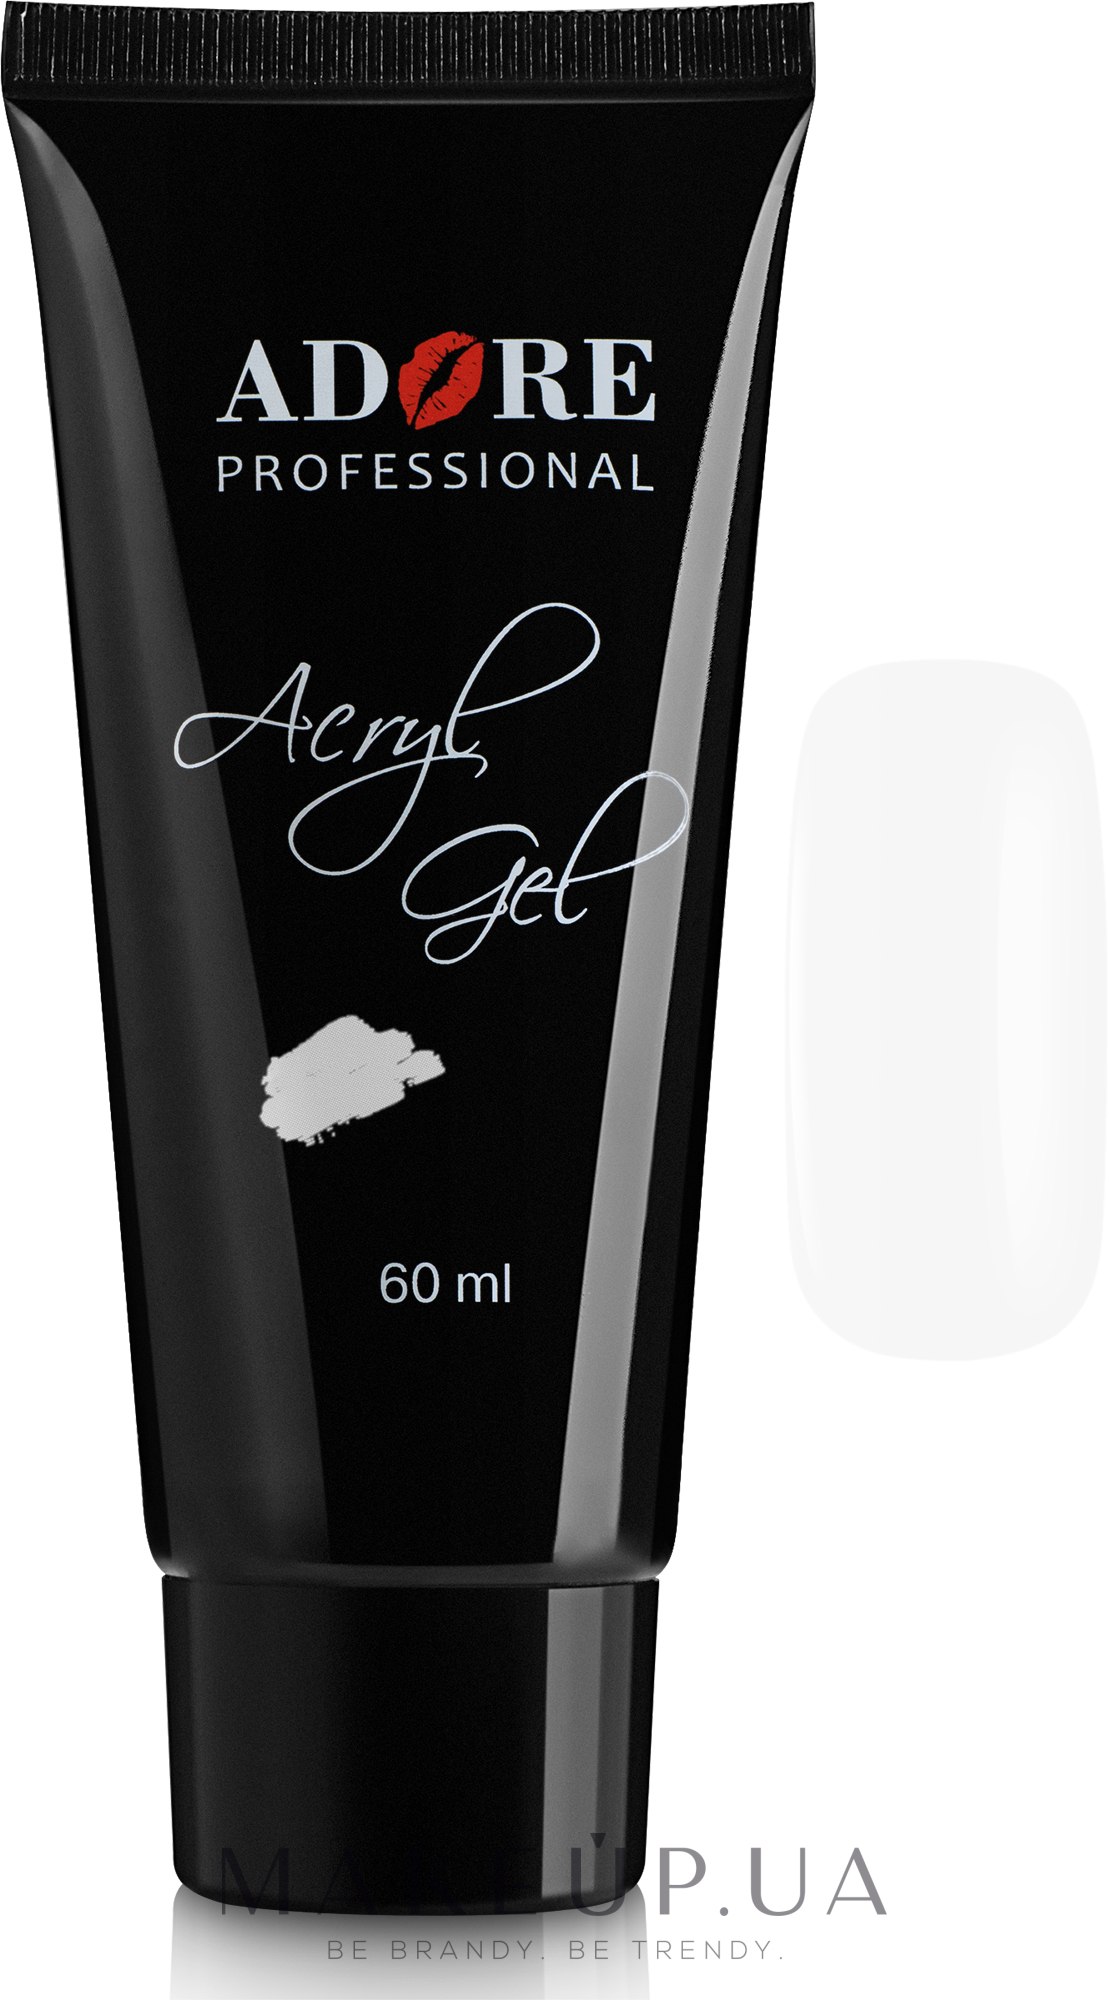 Акрил-гель для ногтей - Adore Professional Acryl Gel (60ml) — фото 01 - Clear